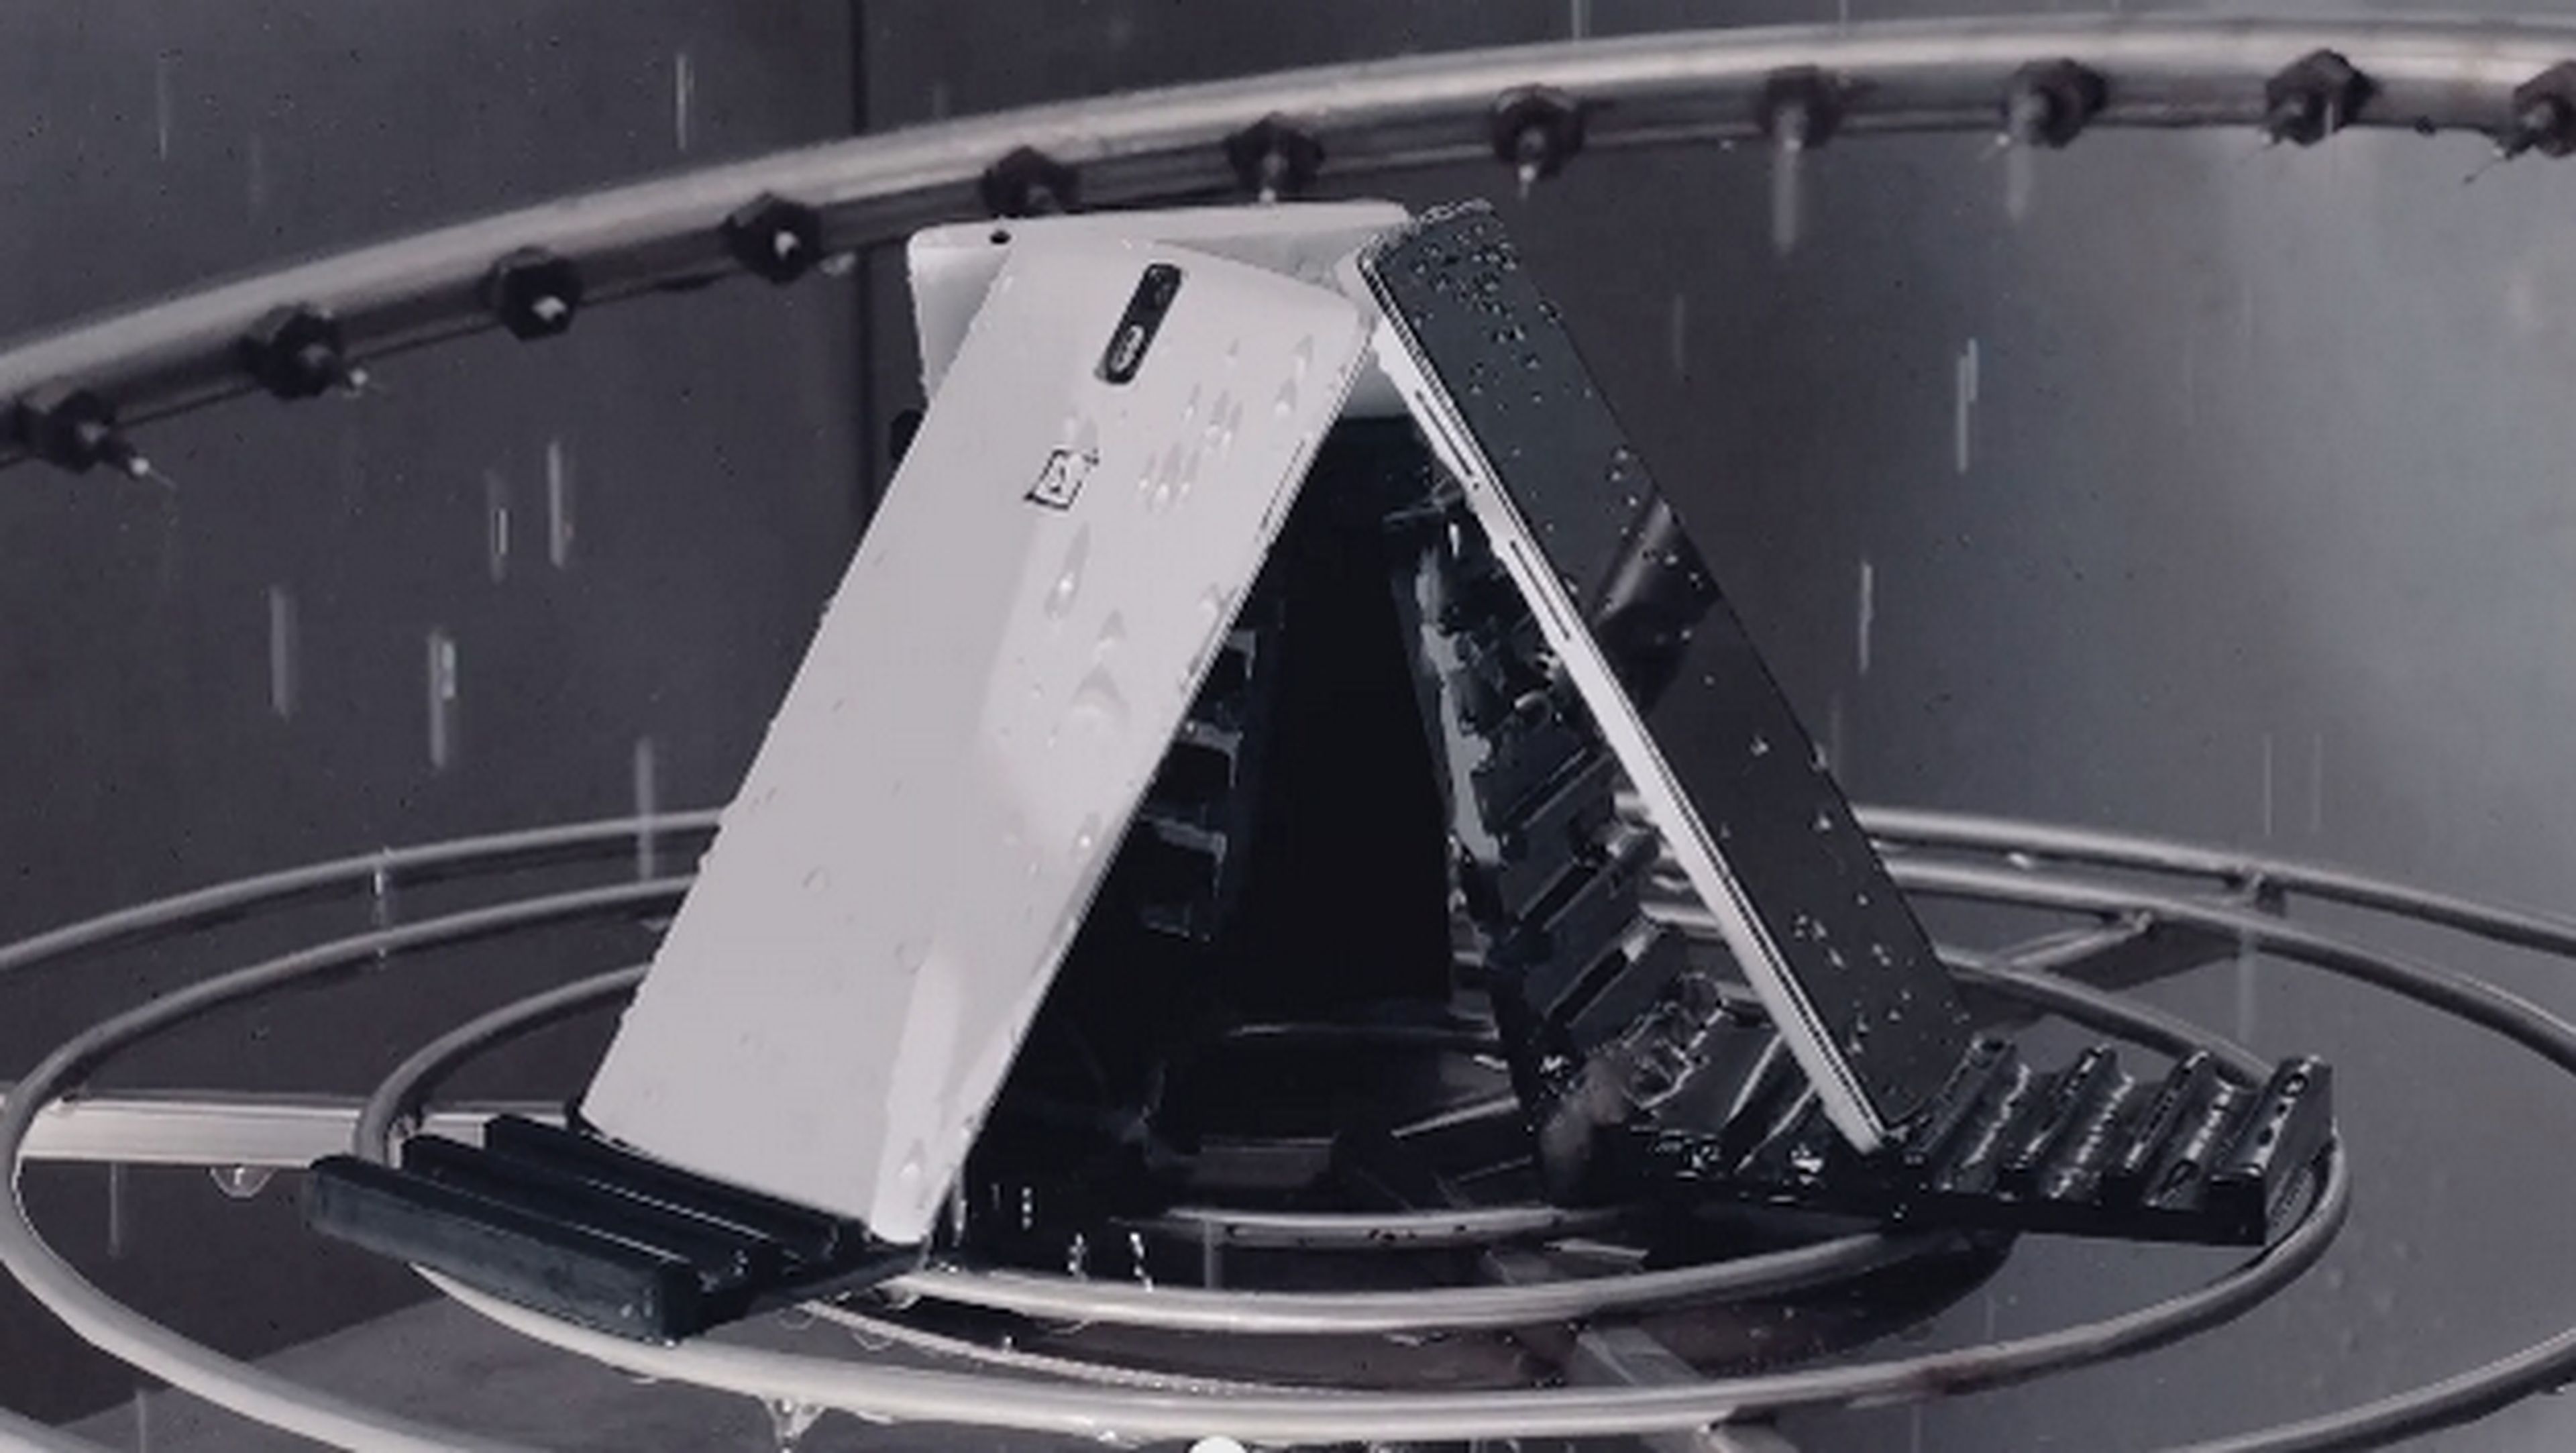 Presentacion oficial del OnePlus One, un smartphone chino puntero a mitad de precio que la competencia.